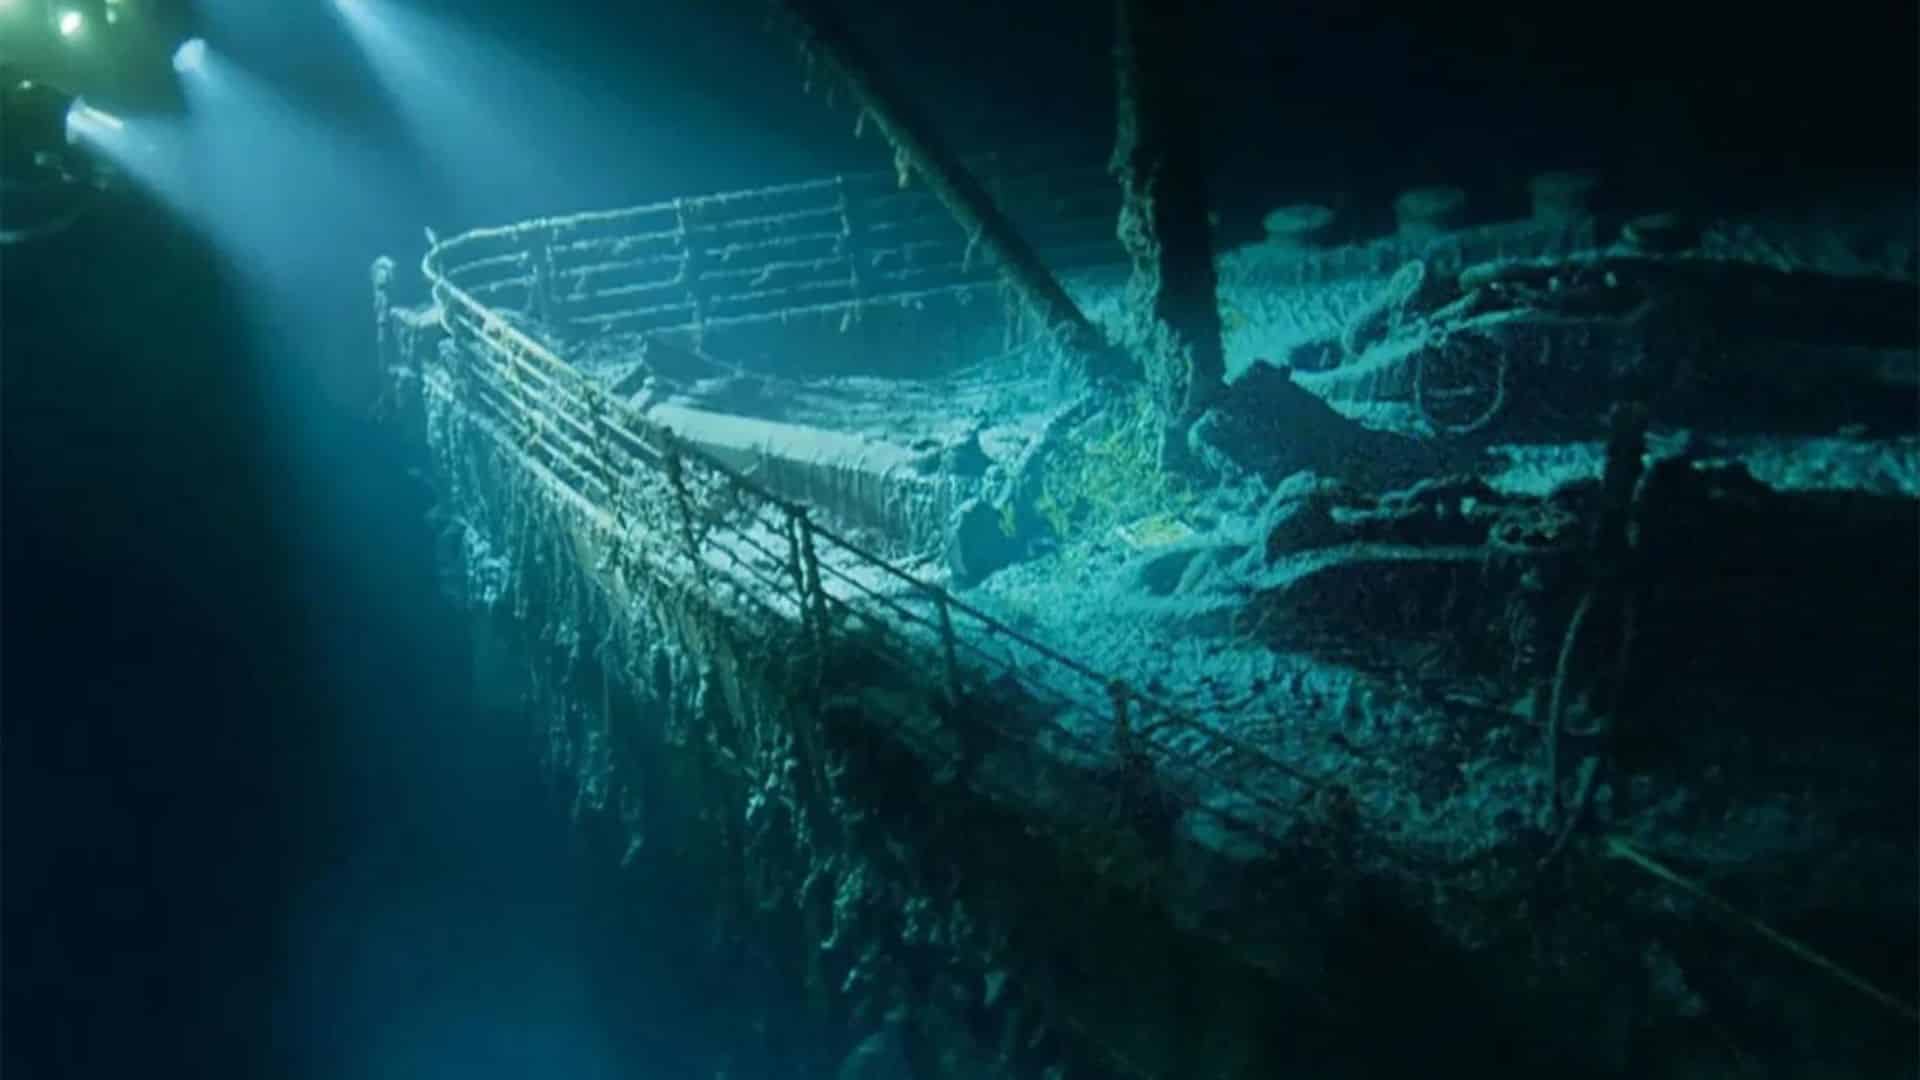 Sous-marin disparu près du Titanic : les dernières secondes anxiogènes des passagers racontées